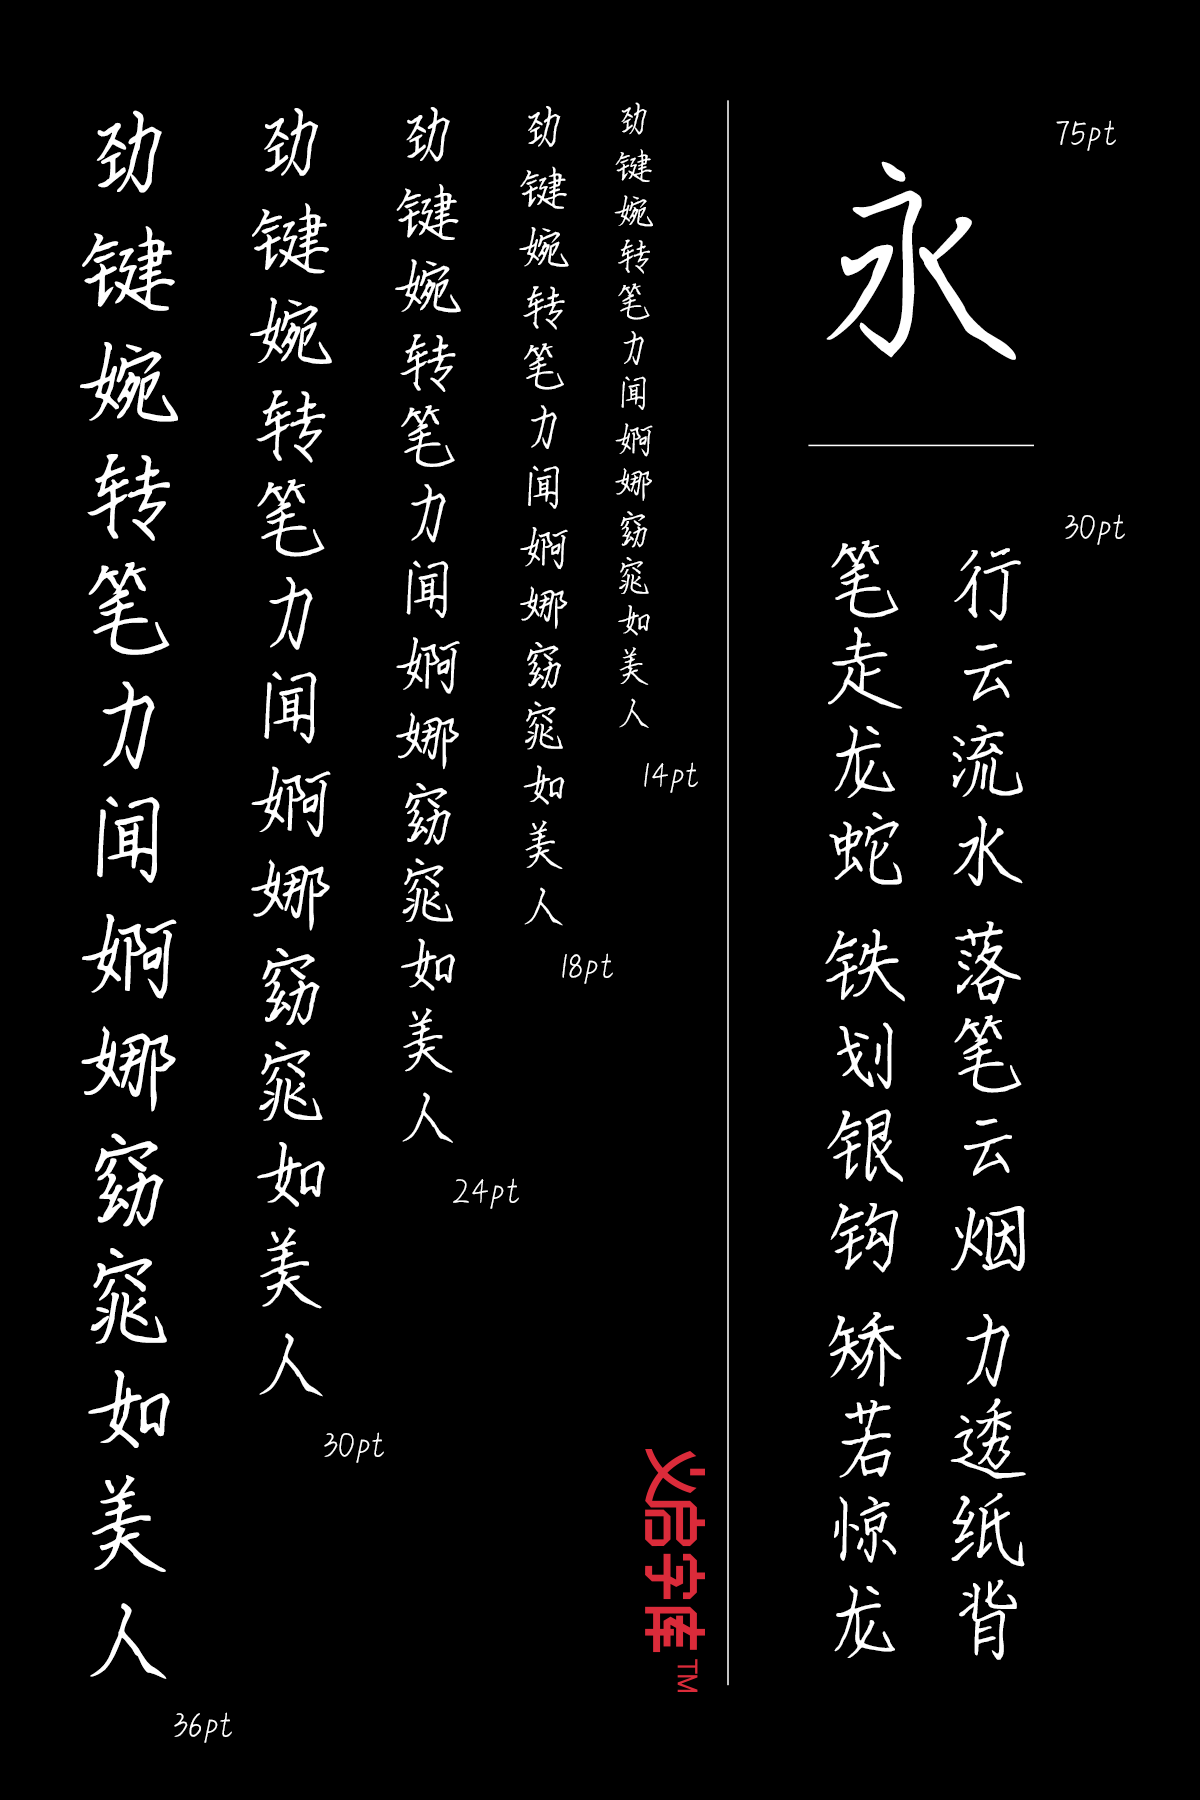 同学你好字体，适合手写摹仿的中文艺术字体